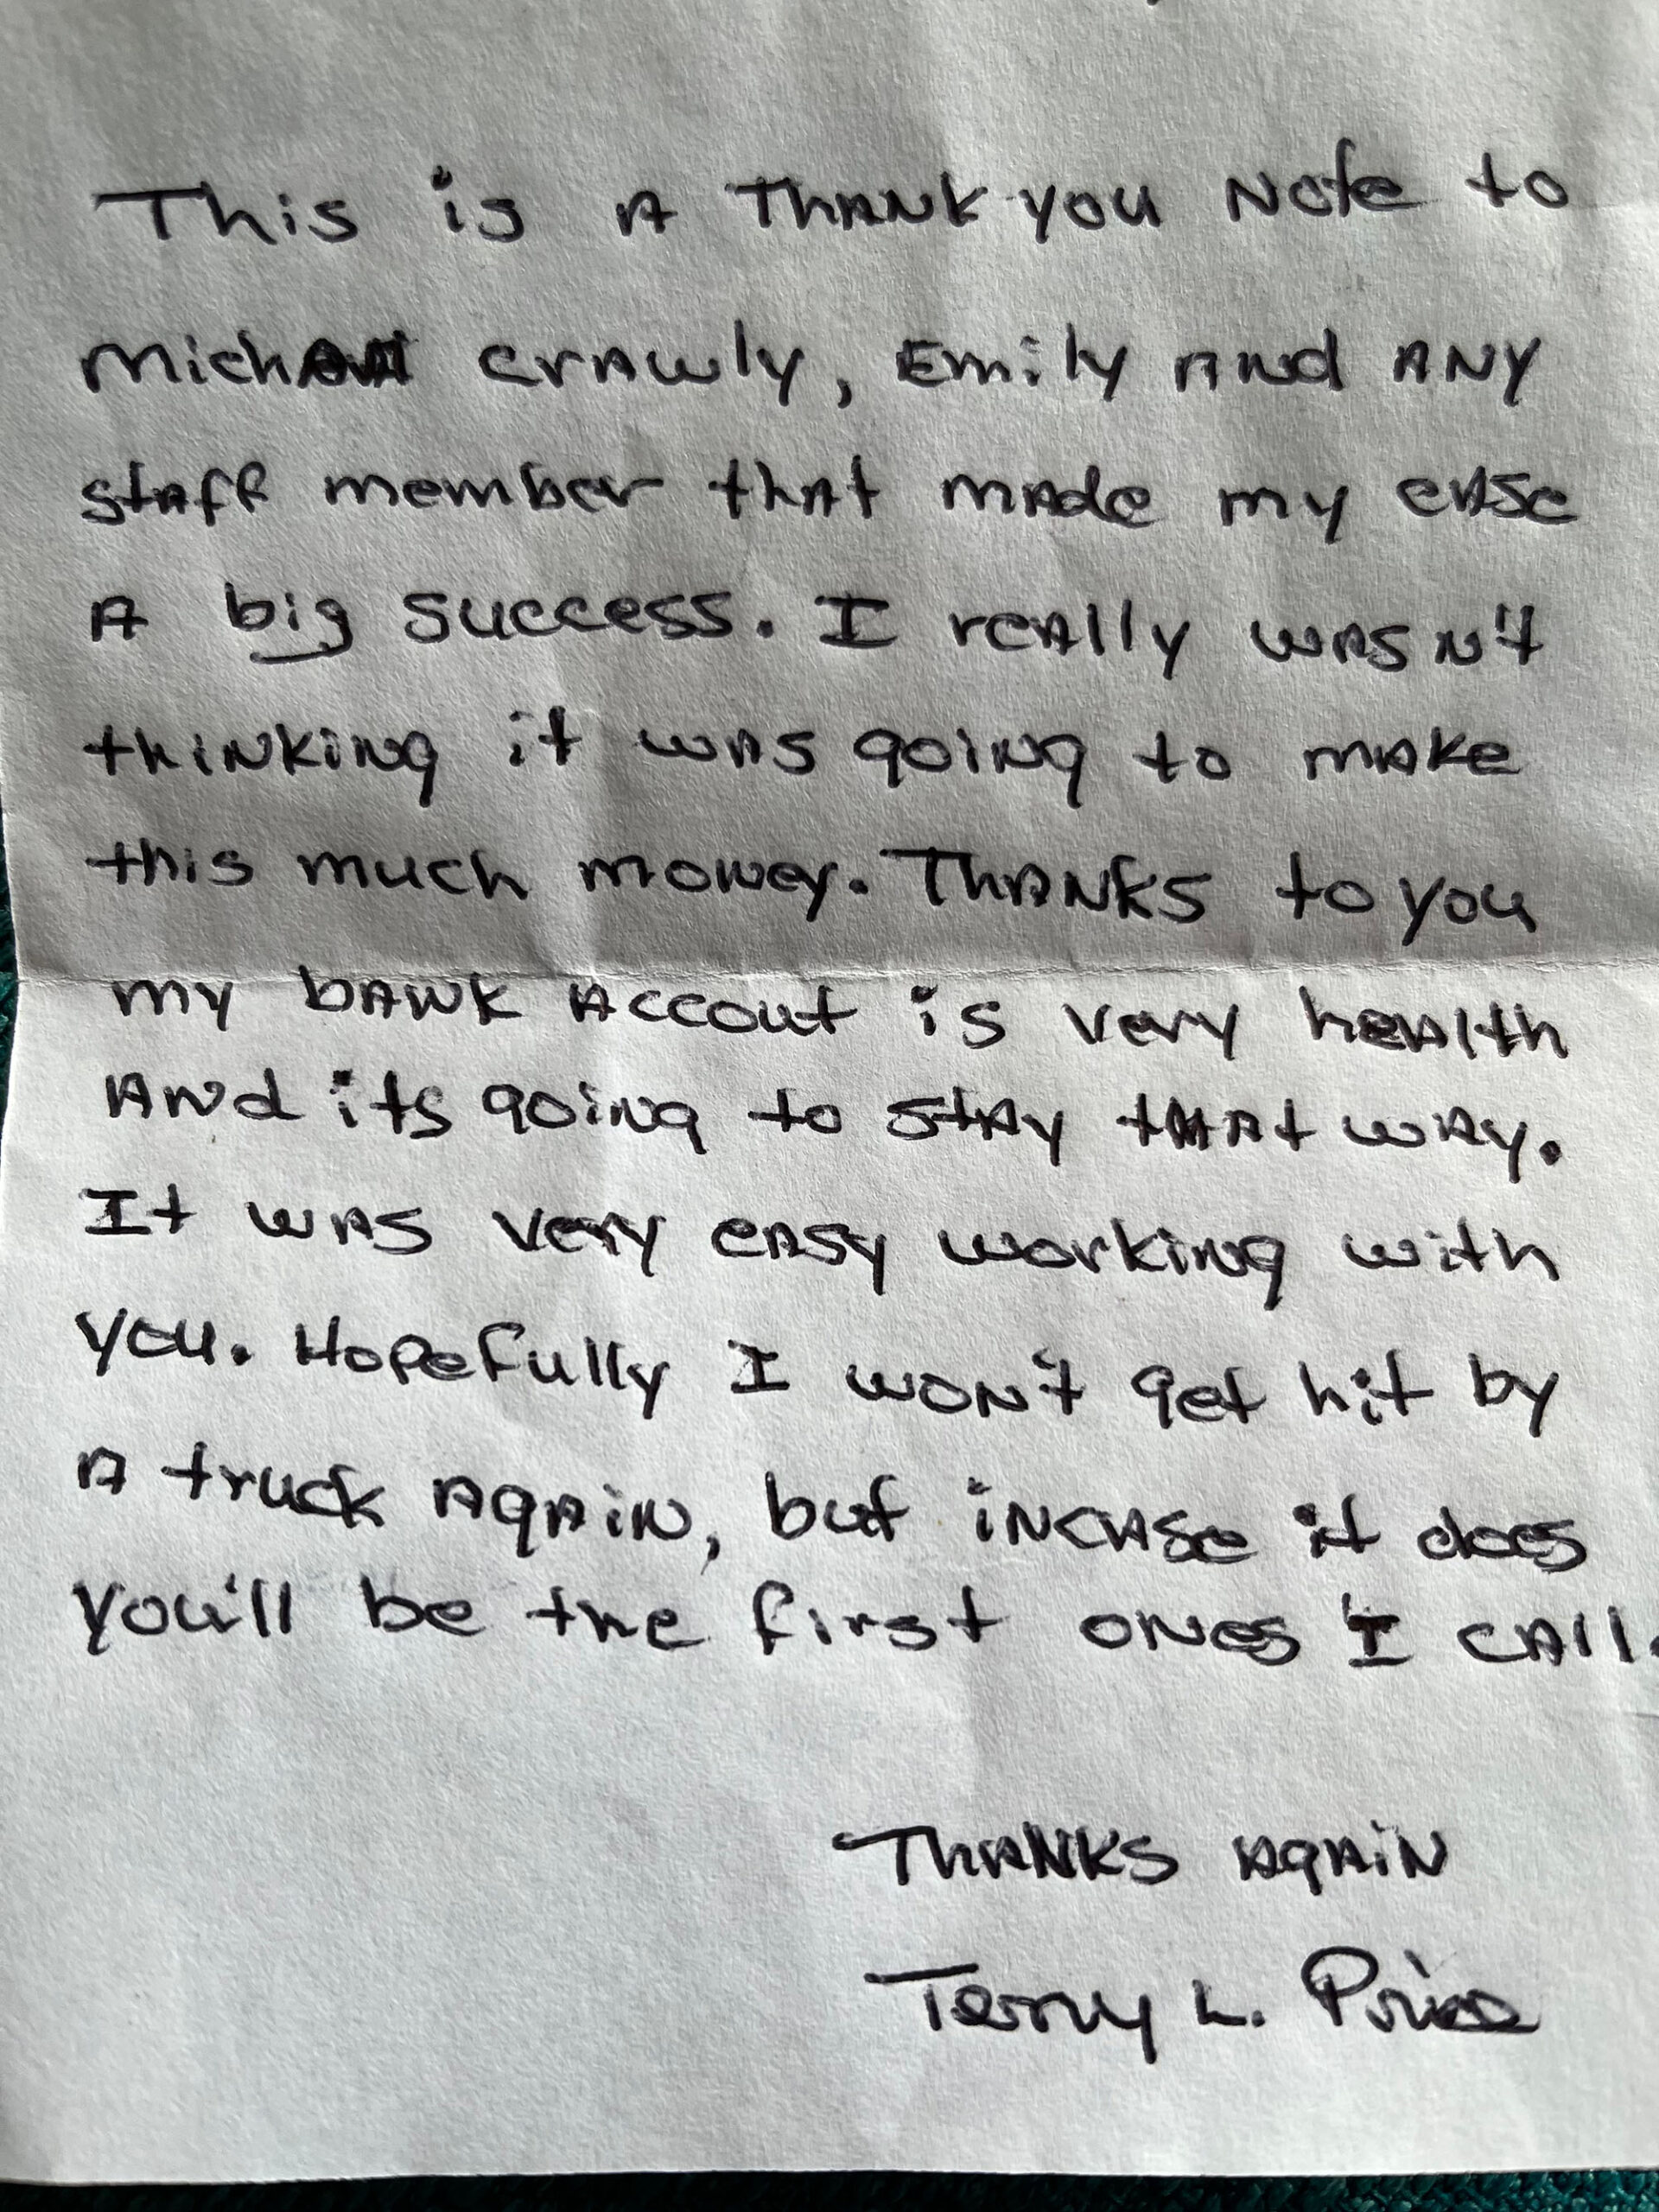 A hand-written thank-you note